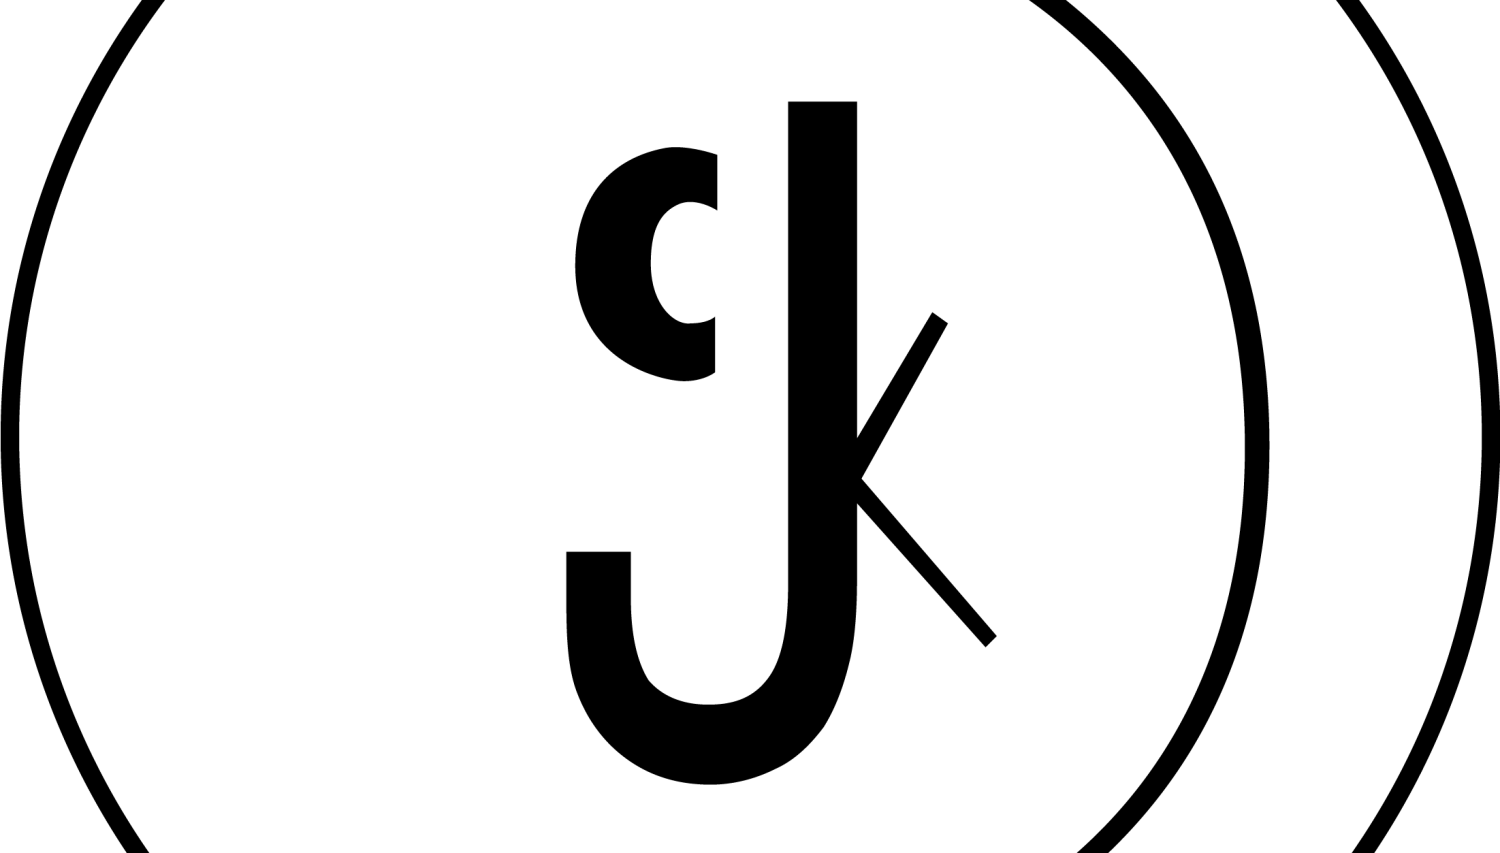 Од пергамента до слике са нета (почеци словенске писмености у свету дигитализације) (мср Наташа Распоповић)